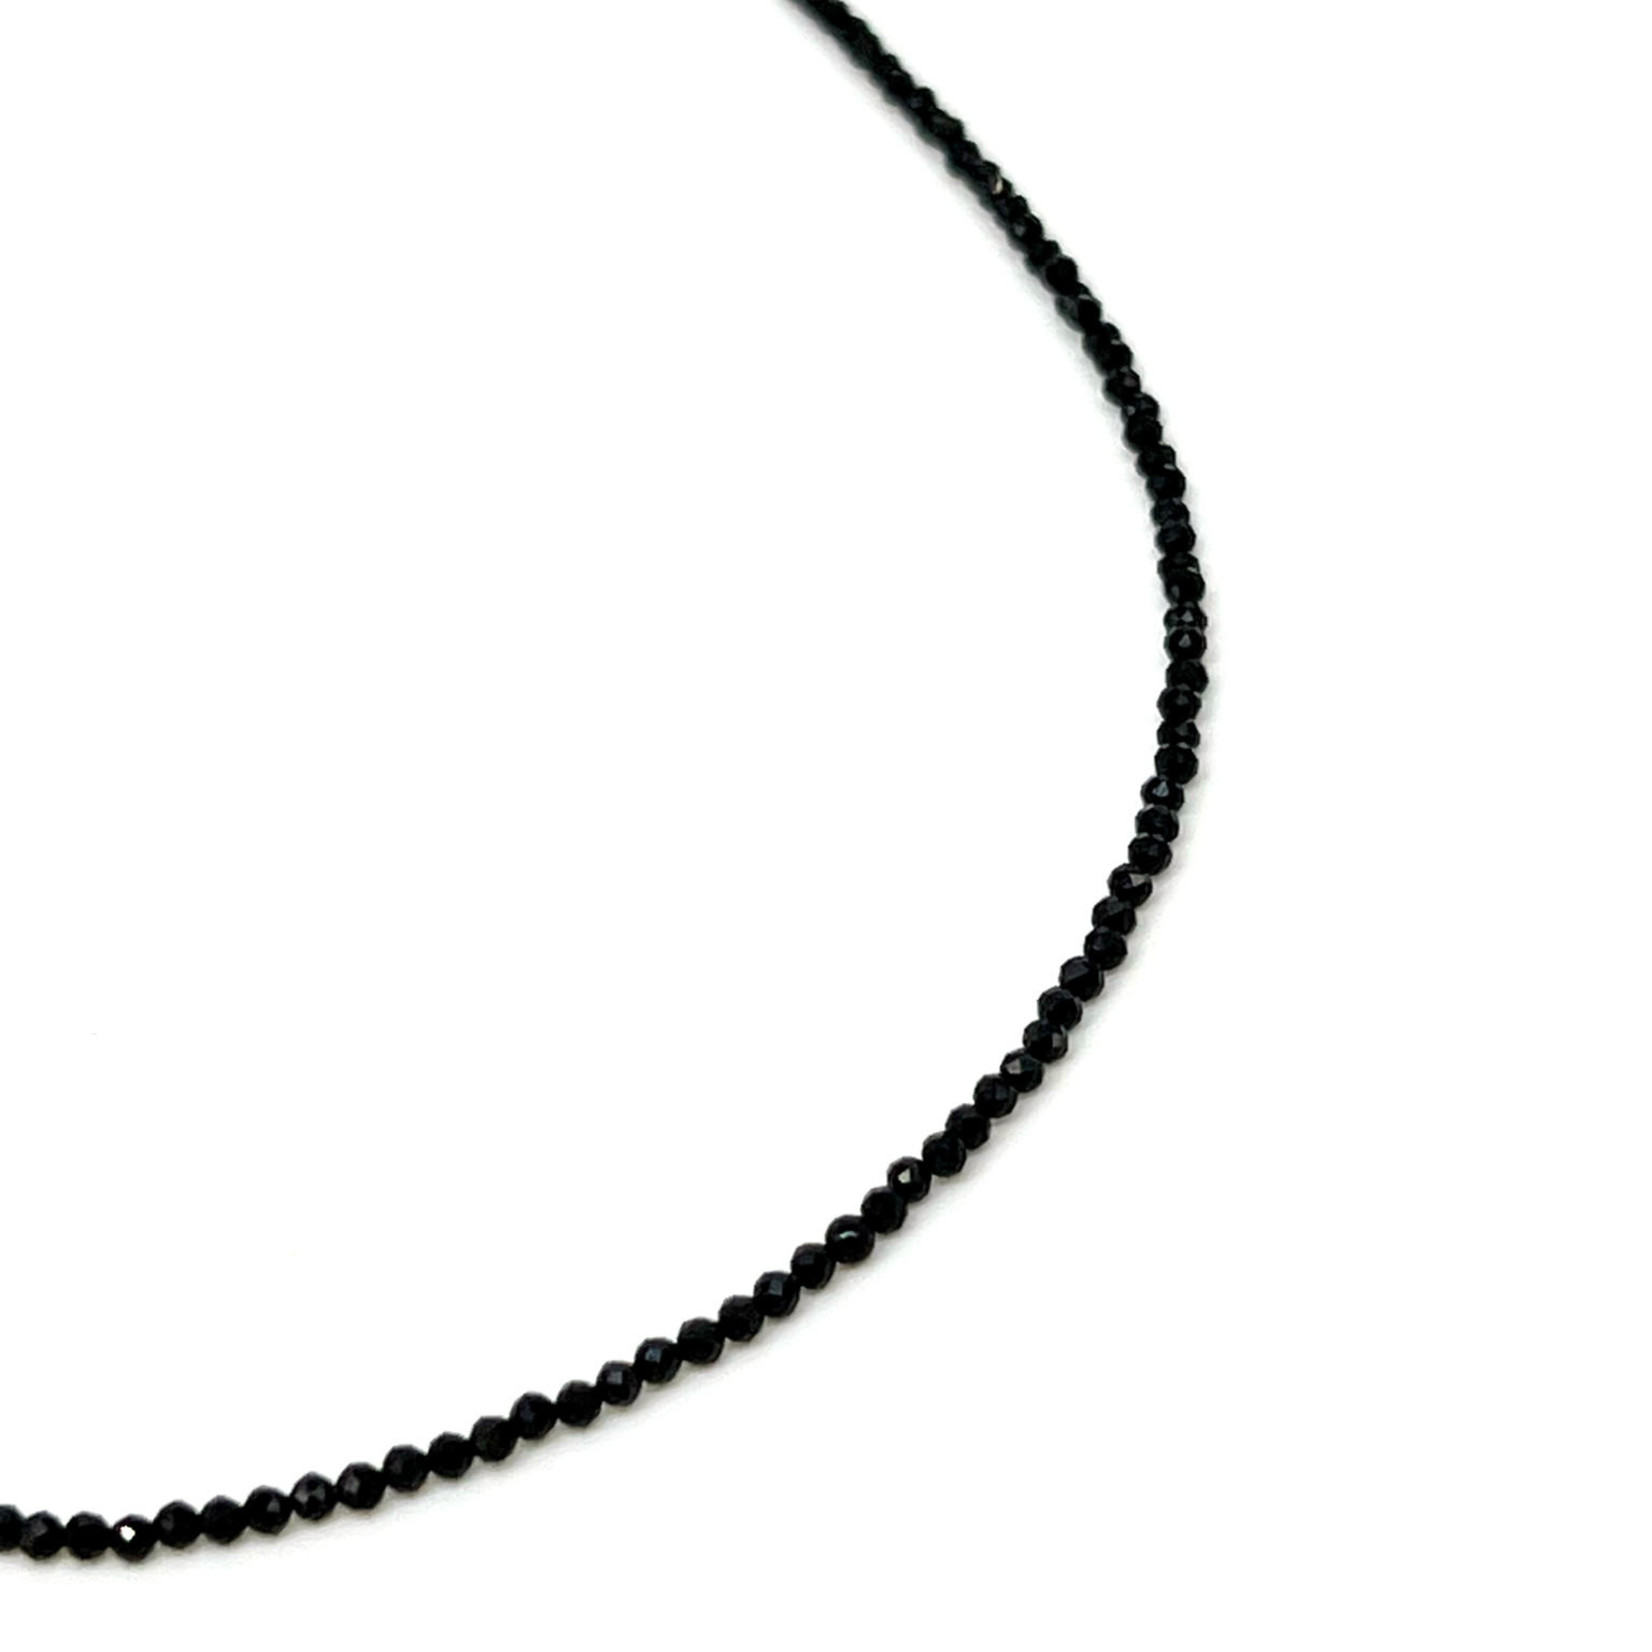 Black Spinel Adjustable 16-18" 2mm Gemstone Bead Necklace